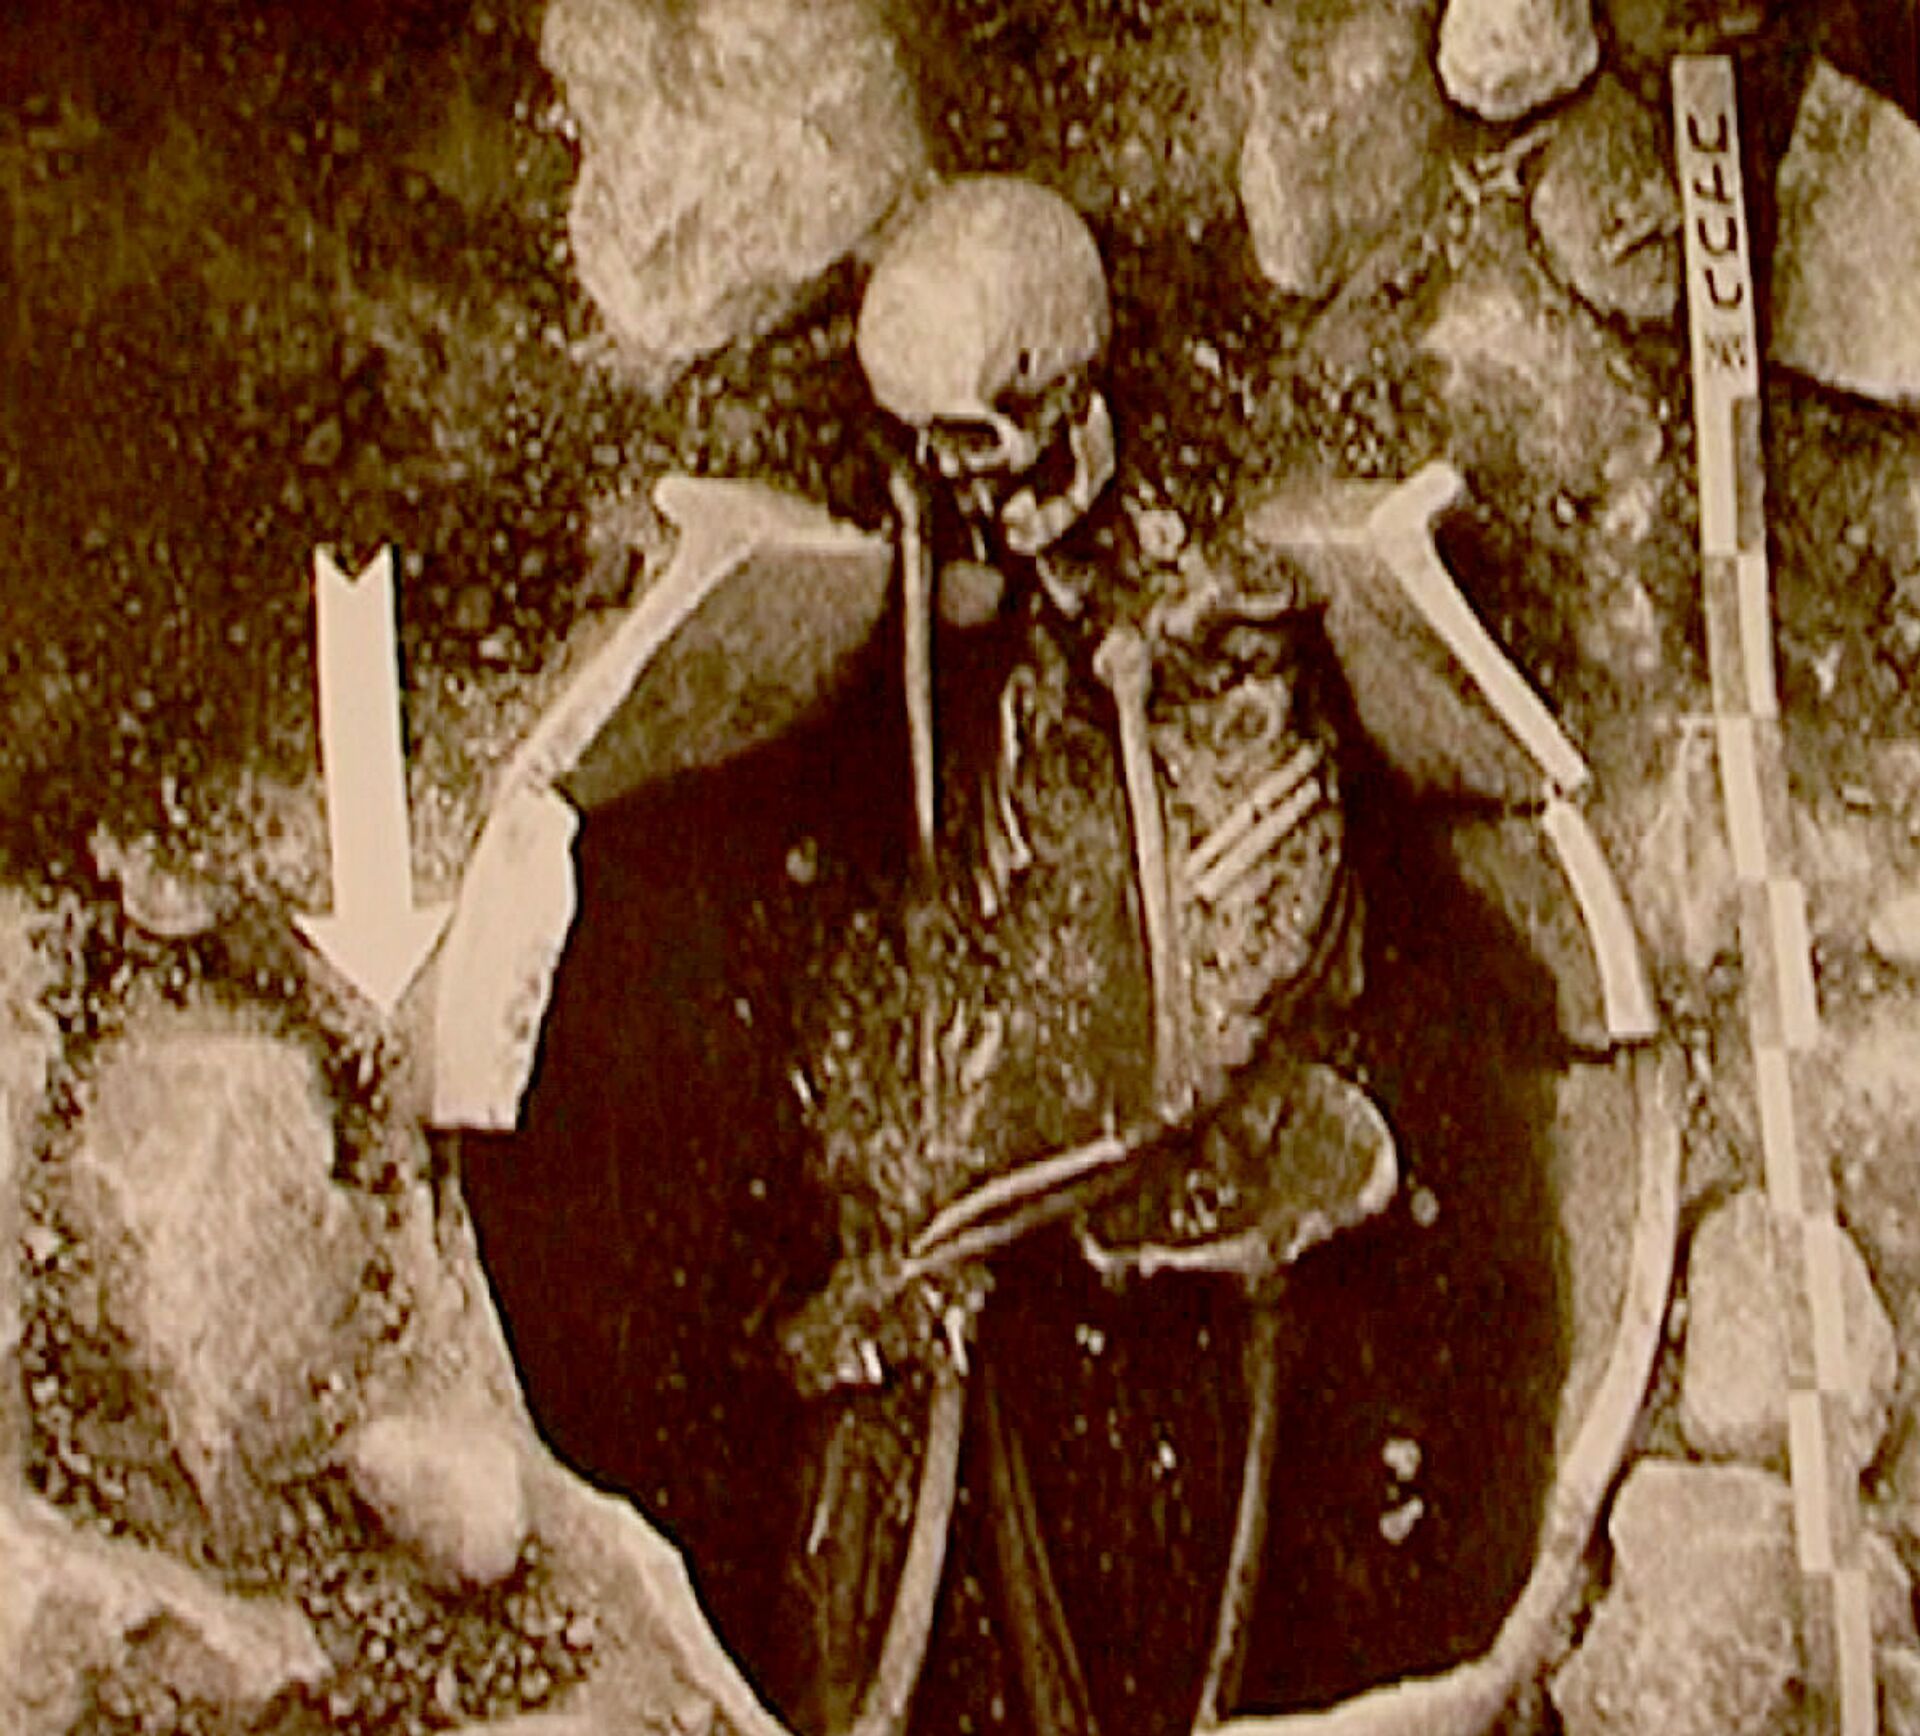 Как выглядели наши далекие предки, и как они делали трепанацию черепа - находки в Лчашене - Sputnik Армения, 1920, 09.05.2021